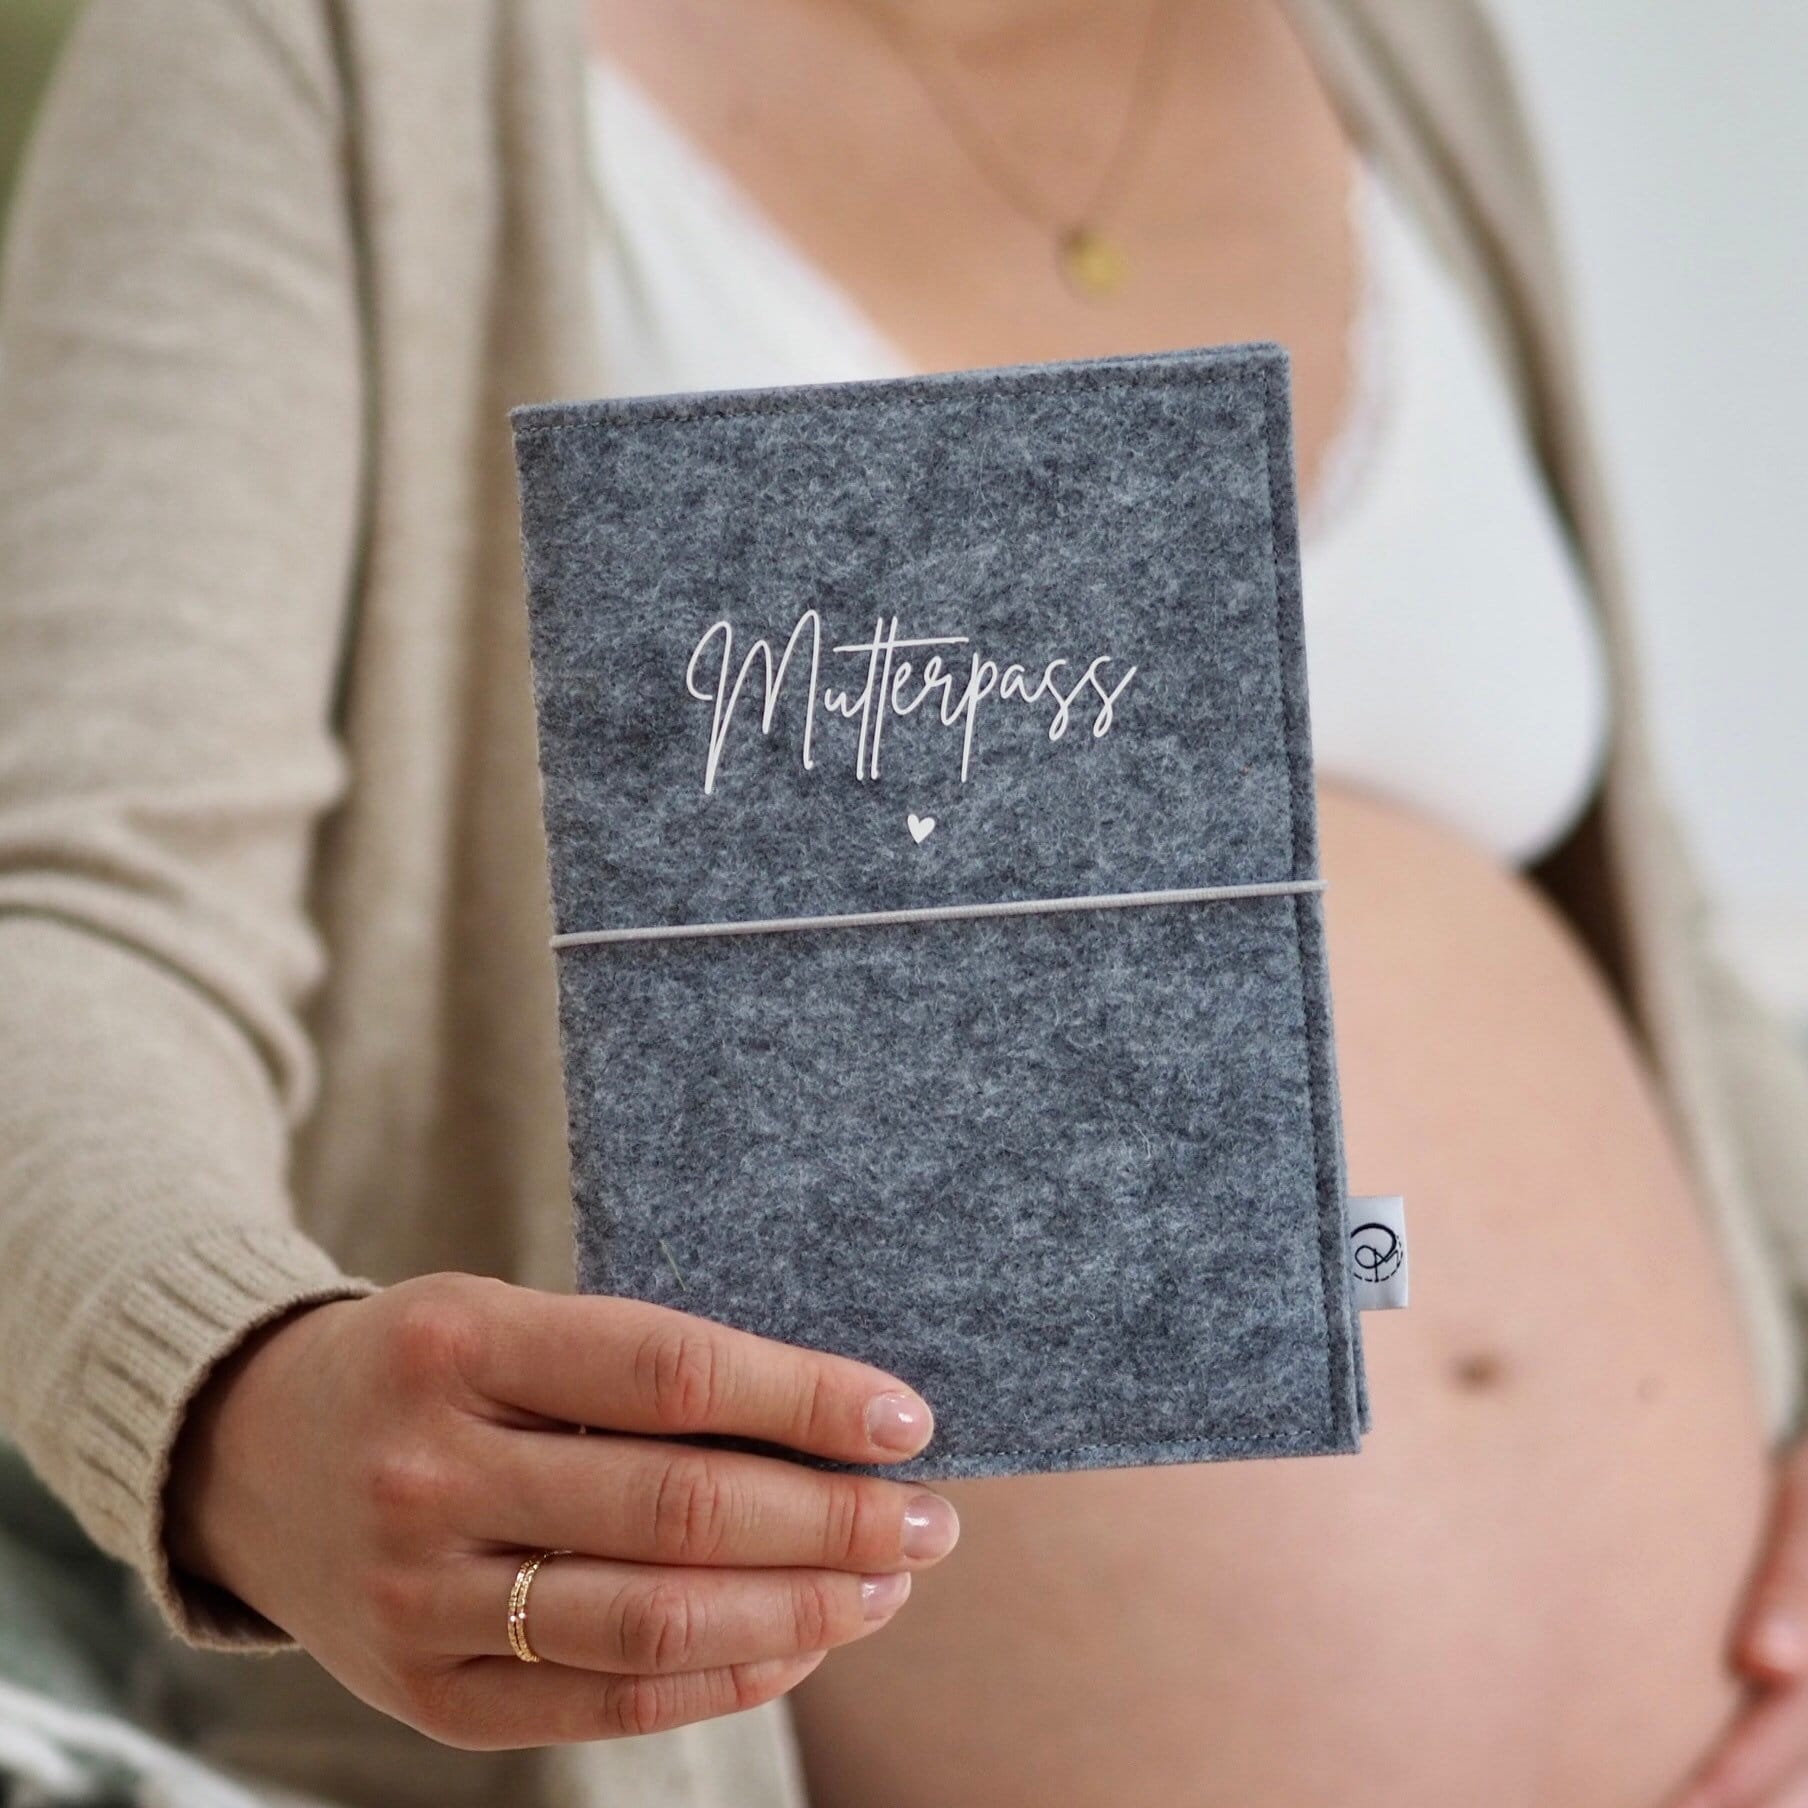 Mutterpasshülle aus Filz in grau mit Aufdruck "Mutterpass" | Wunderschönes Geschenk für werdende Mütter